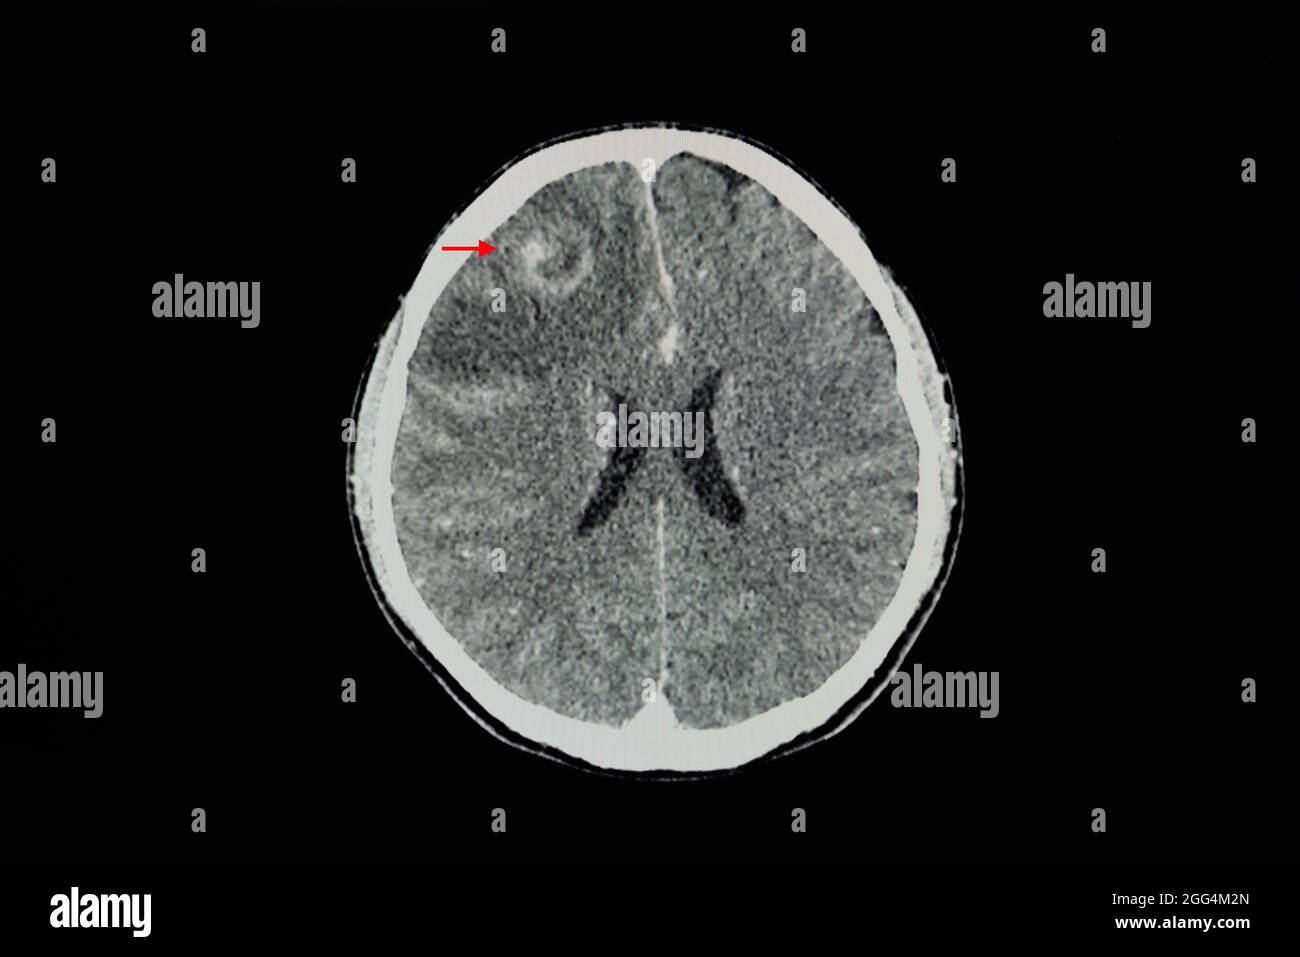 Una scansione cerebrale TC con contrasto di un paziente con lesione che migliora il bordo con edema cerebrale al lobo frontale destro. Foto Stock